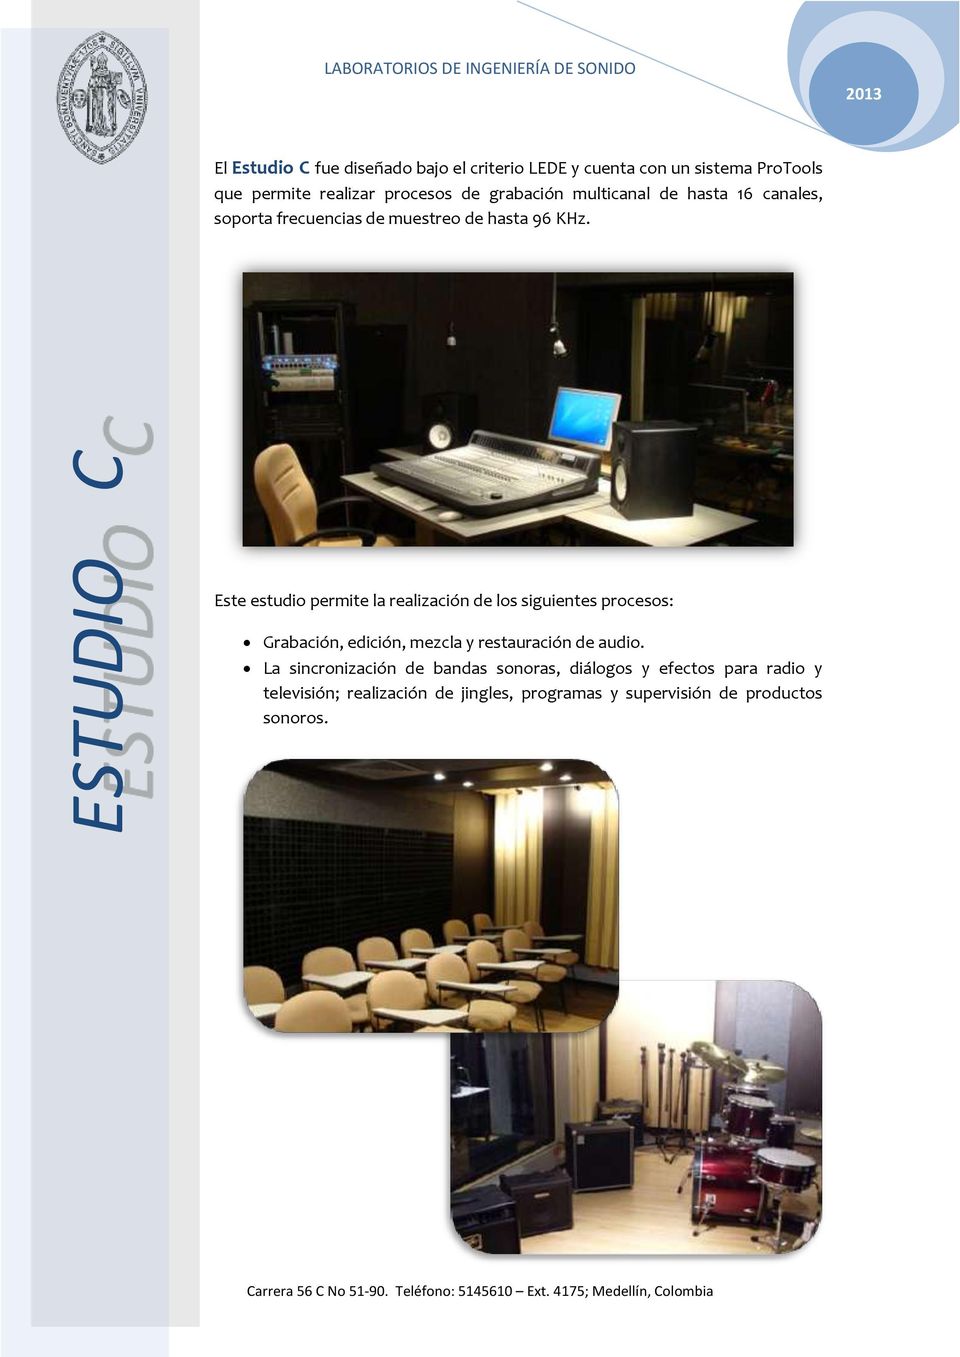 Este estudio permite la realización de los siguientes procesos: Grabación, edición, mezcla y restauración de audio.